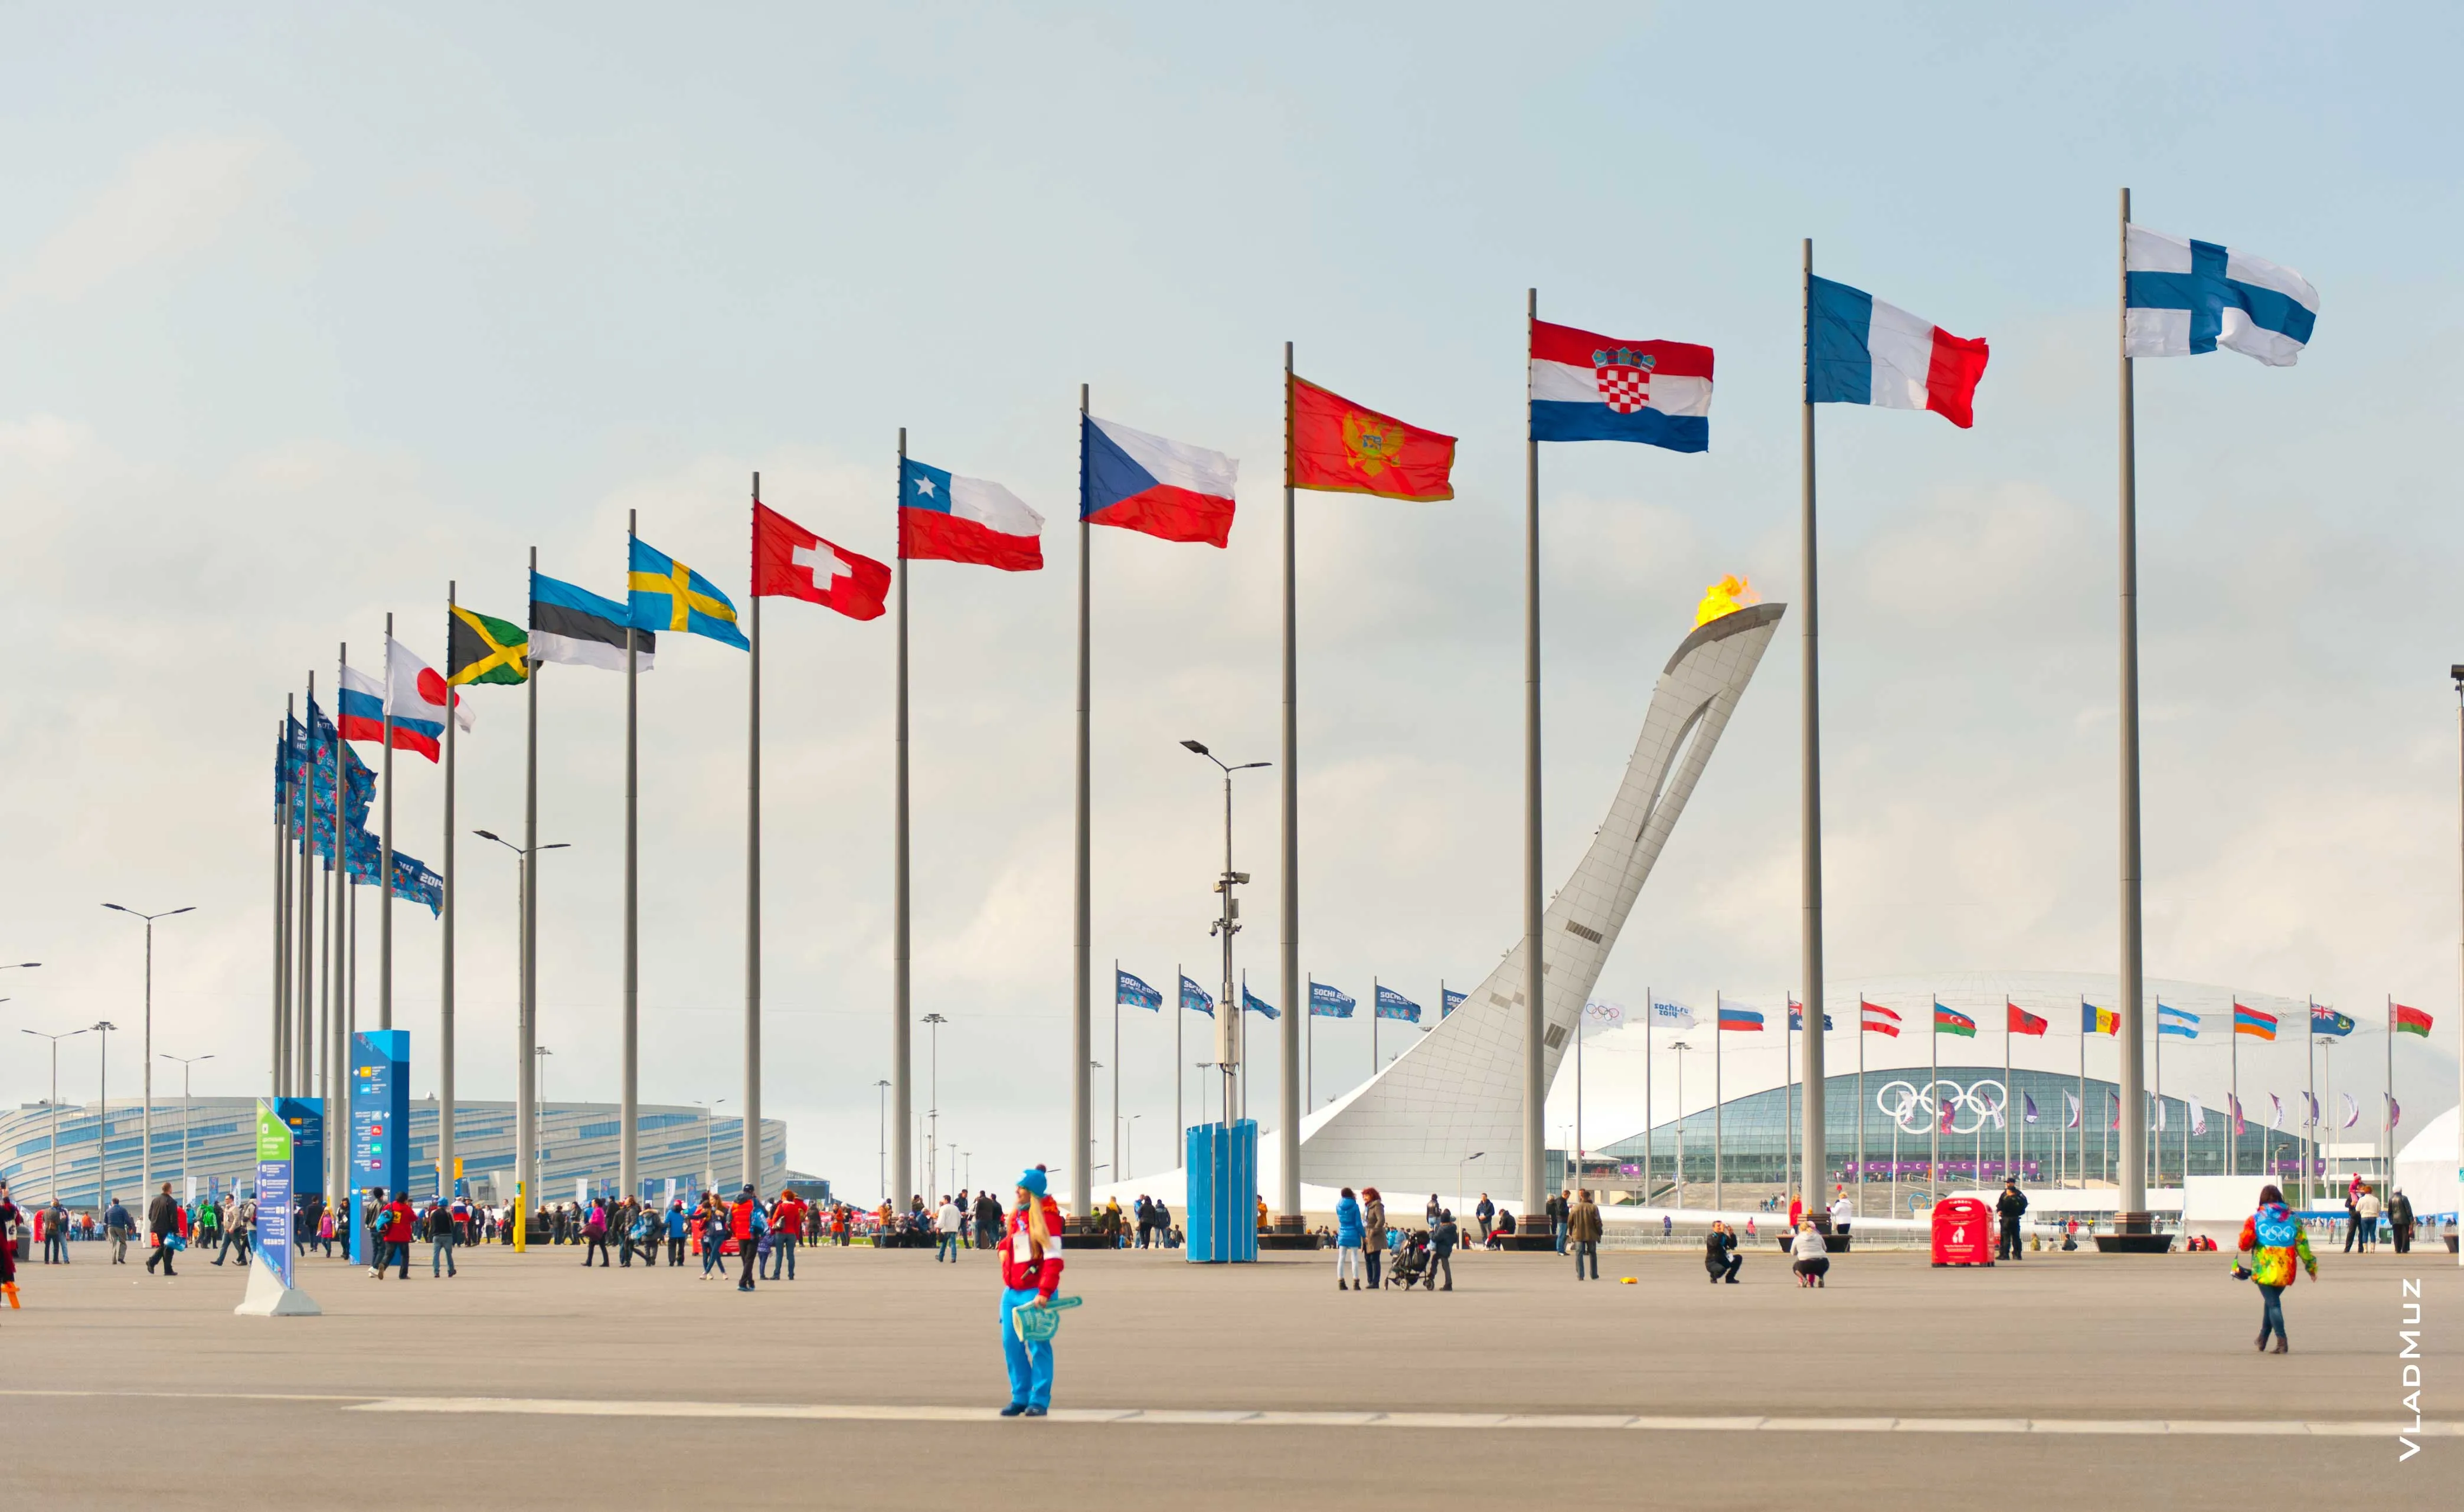 Площадь олимпийского парка. Сочи-Олимпийский парк флагштоки. Олимпийский парк Сочи флаги. Олимпийский парк Сочи 2014. Флаги в Олимпийском парке Сочи.